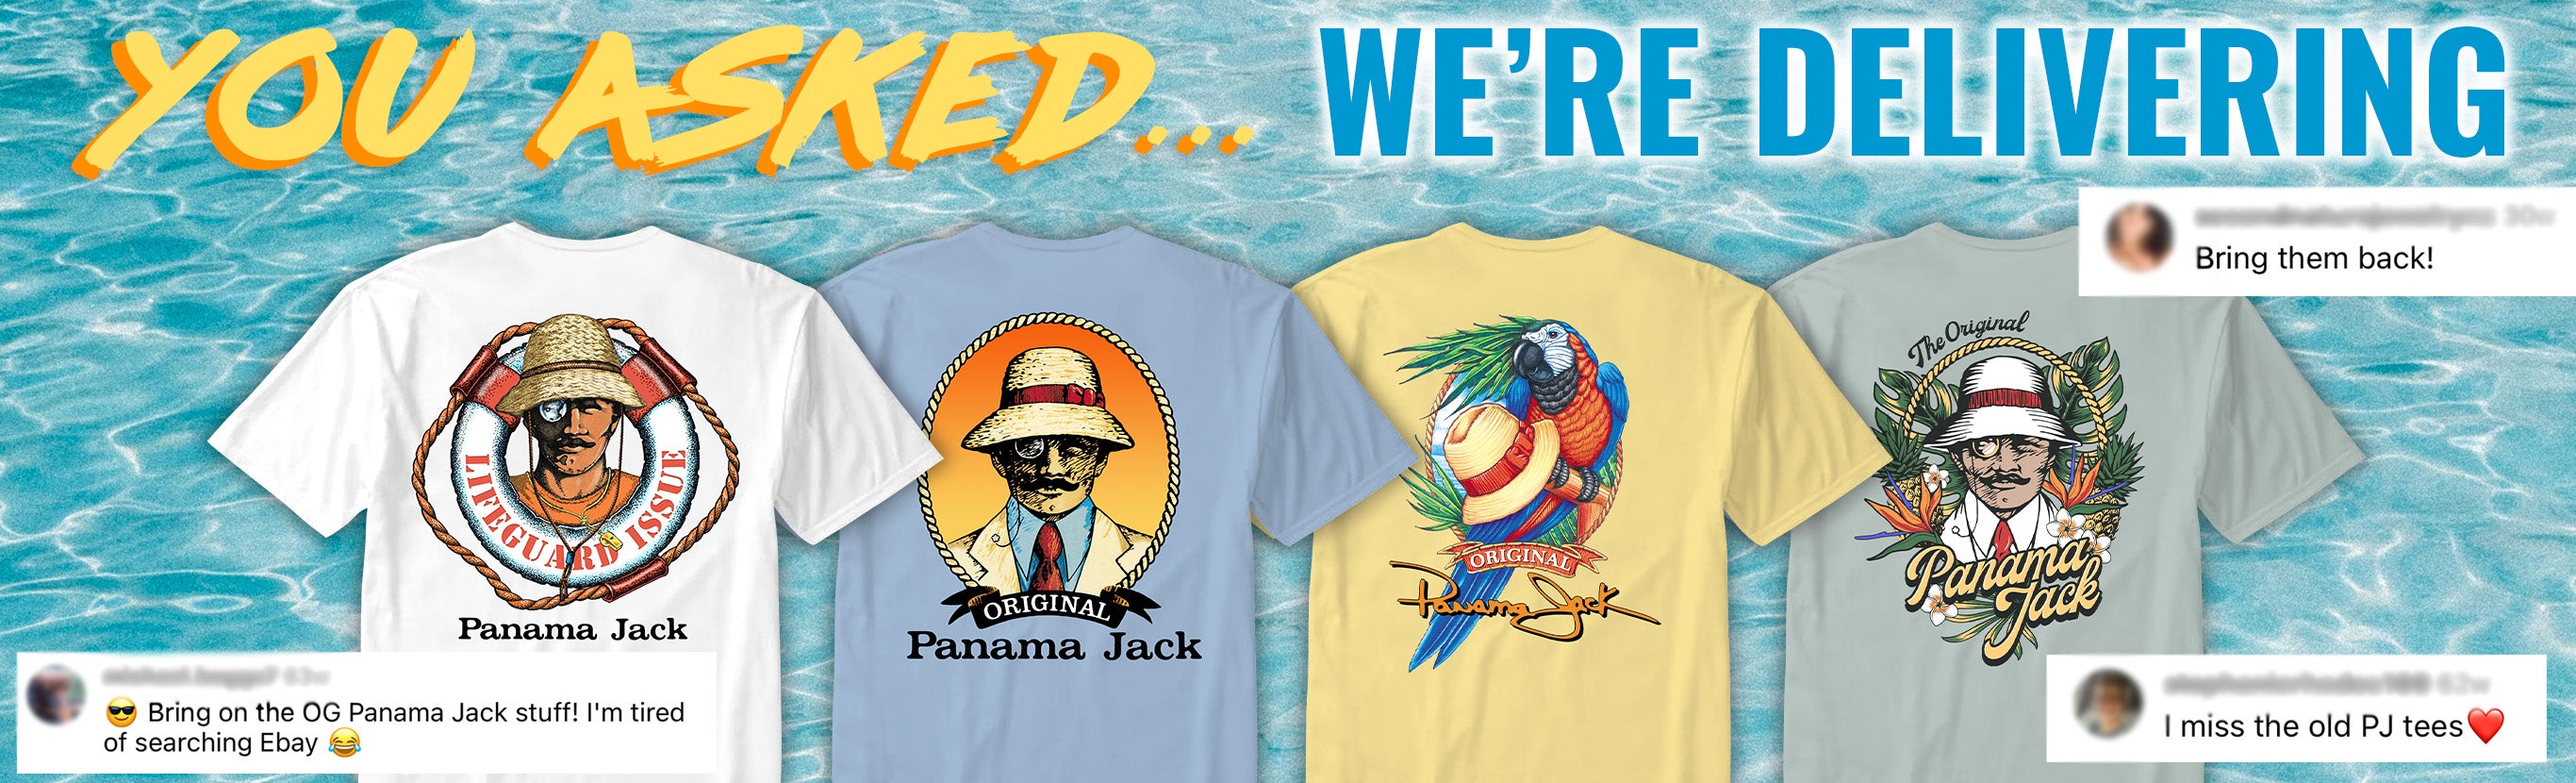 Panama Jack T-Shirts